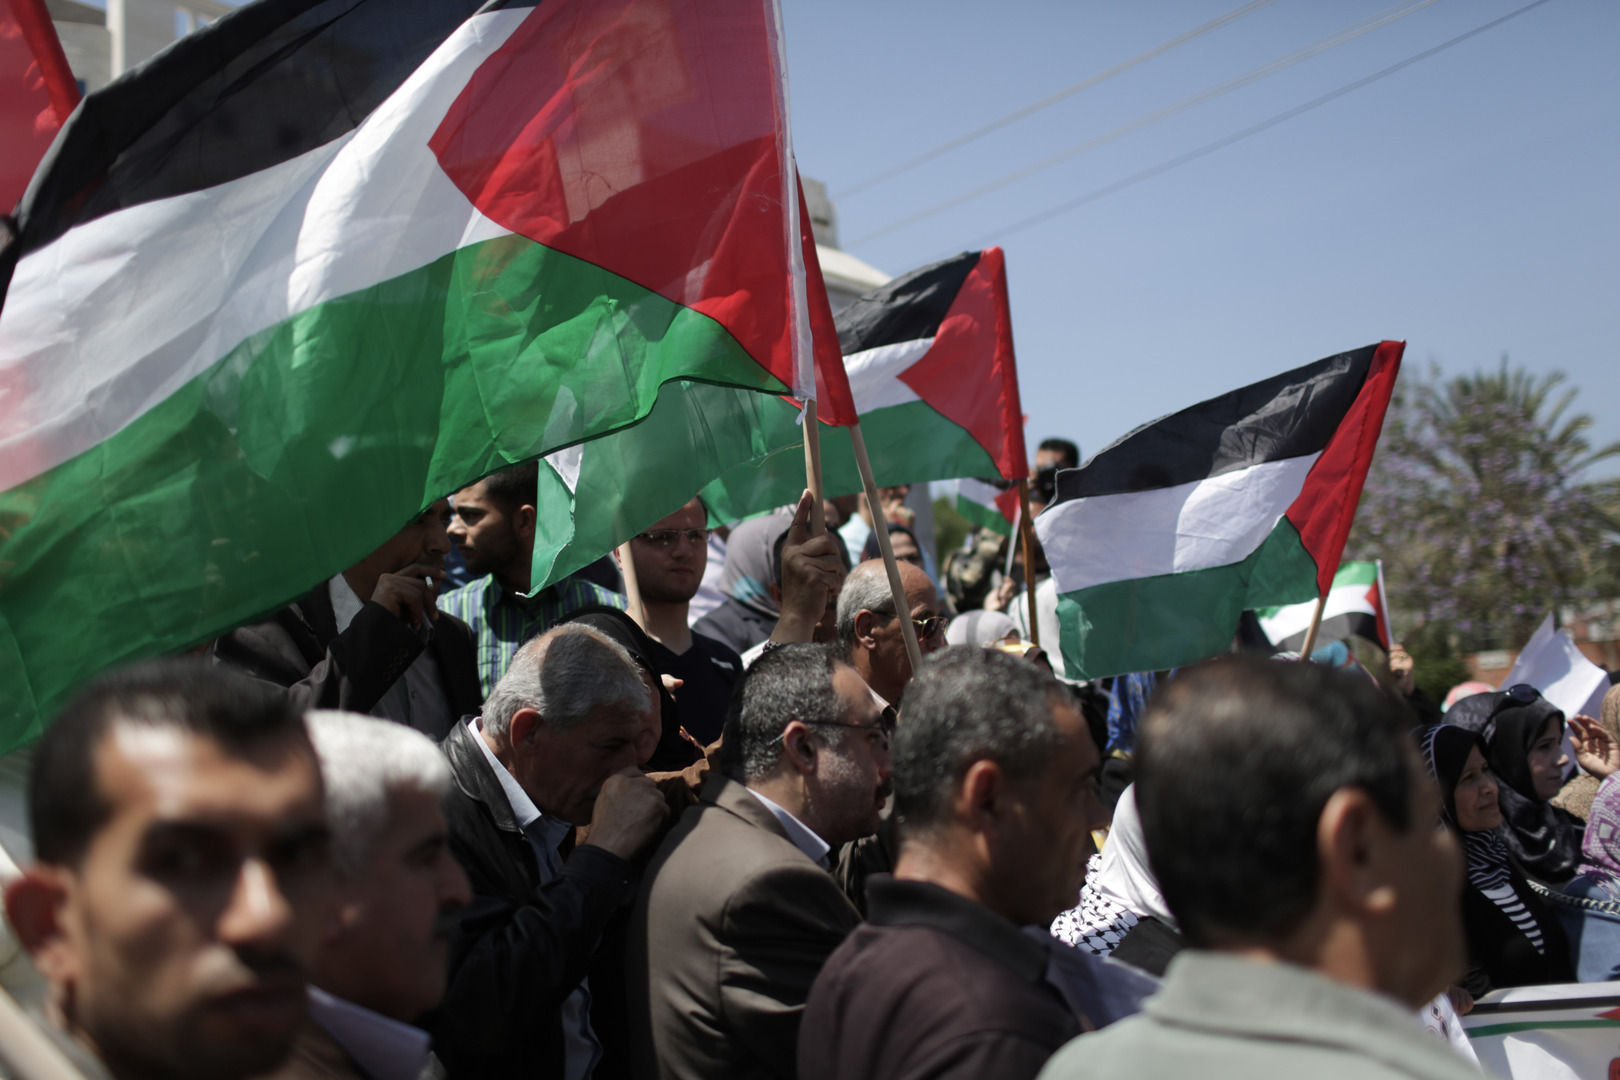 حركة المجاهدين الفلسطينية: سياسة الاغتيالات لن تزيدنا إلا صلابة وتمسكا بطريقنا